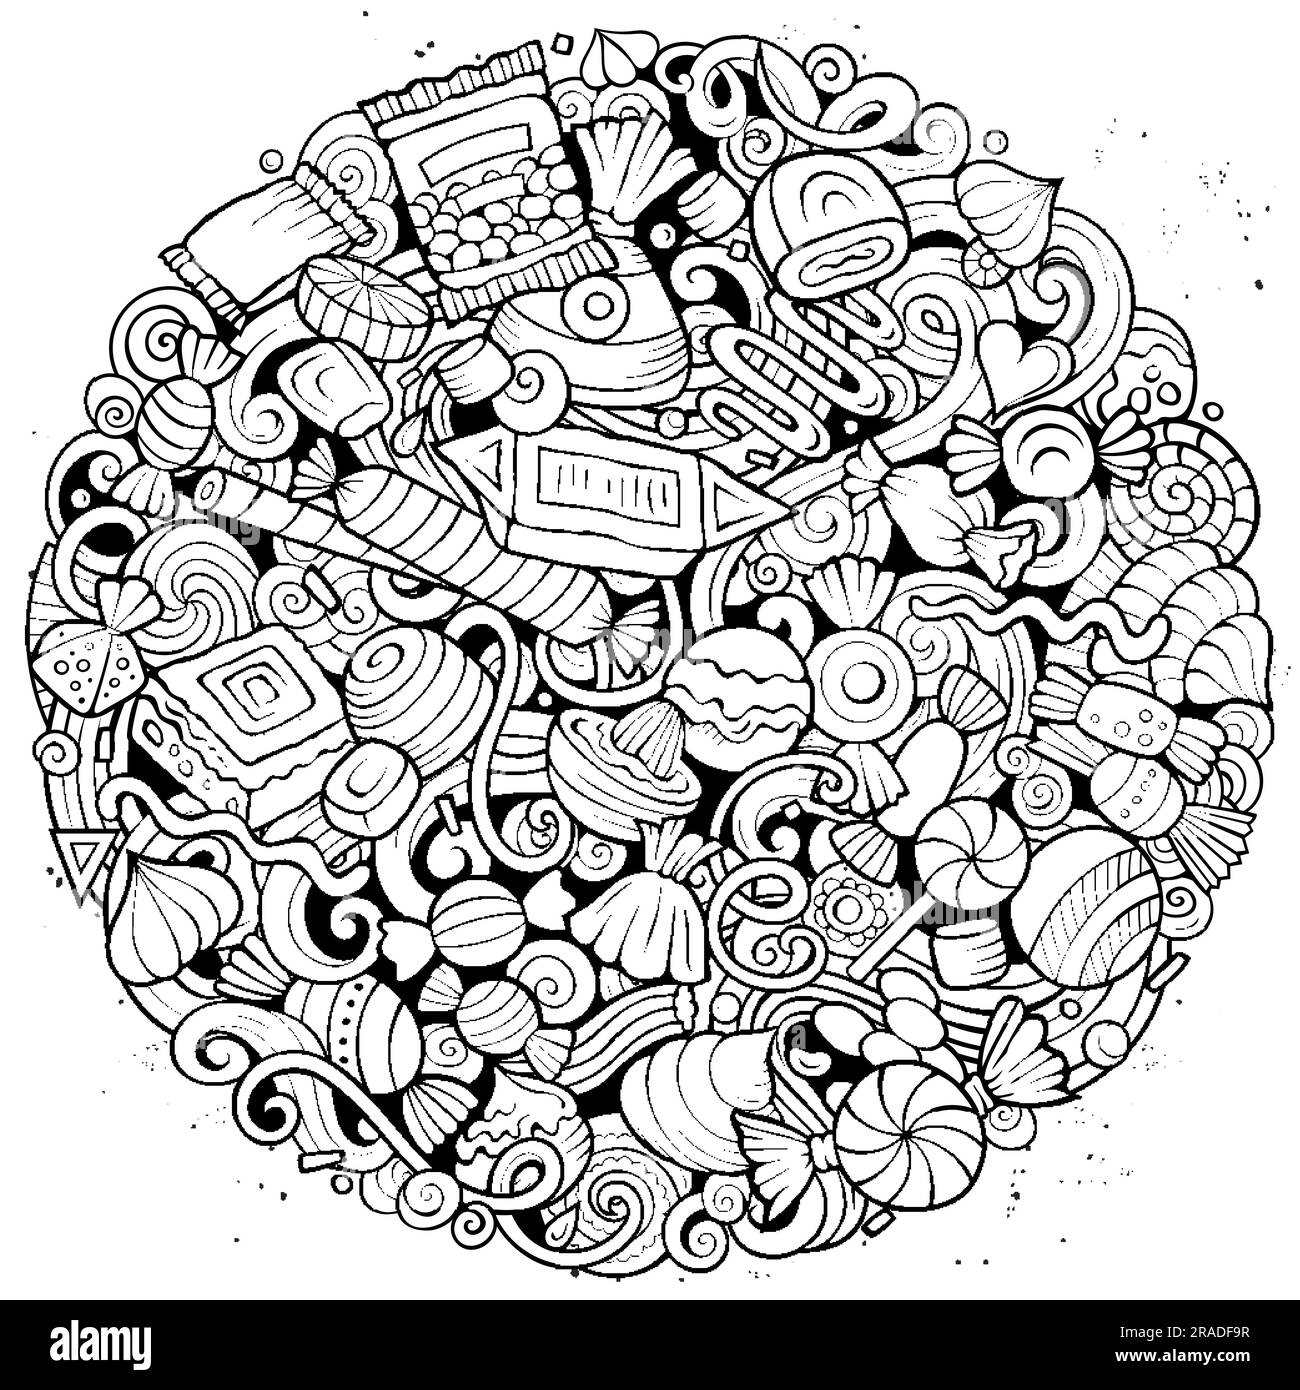 Bonbons Cartoon-Vektor runde Kritzeleien Illustration. Süßes Essen. Konfektionierungselemente und Hintergrund von Objekten. Ein komisches Bild. Alle Elemente sind Stock Vektor